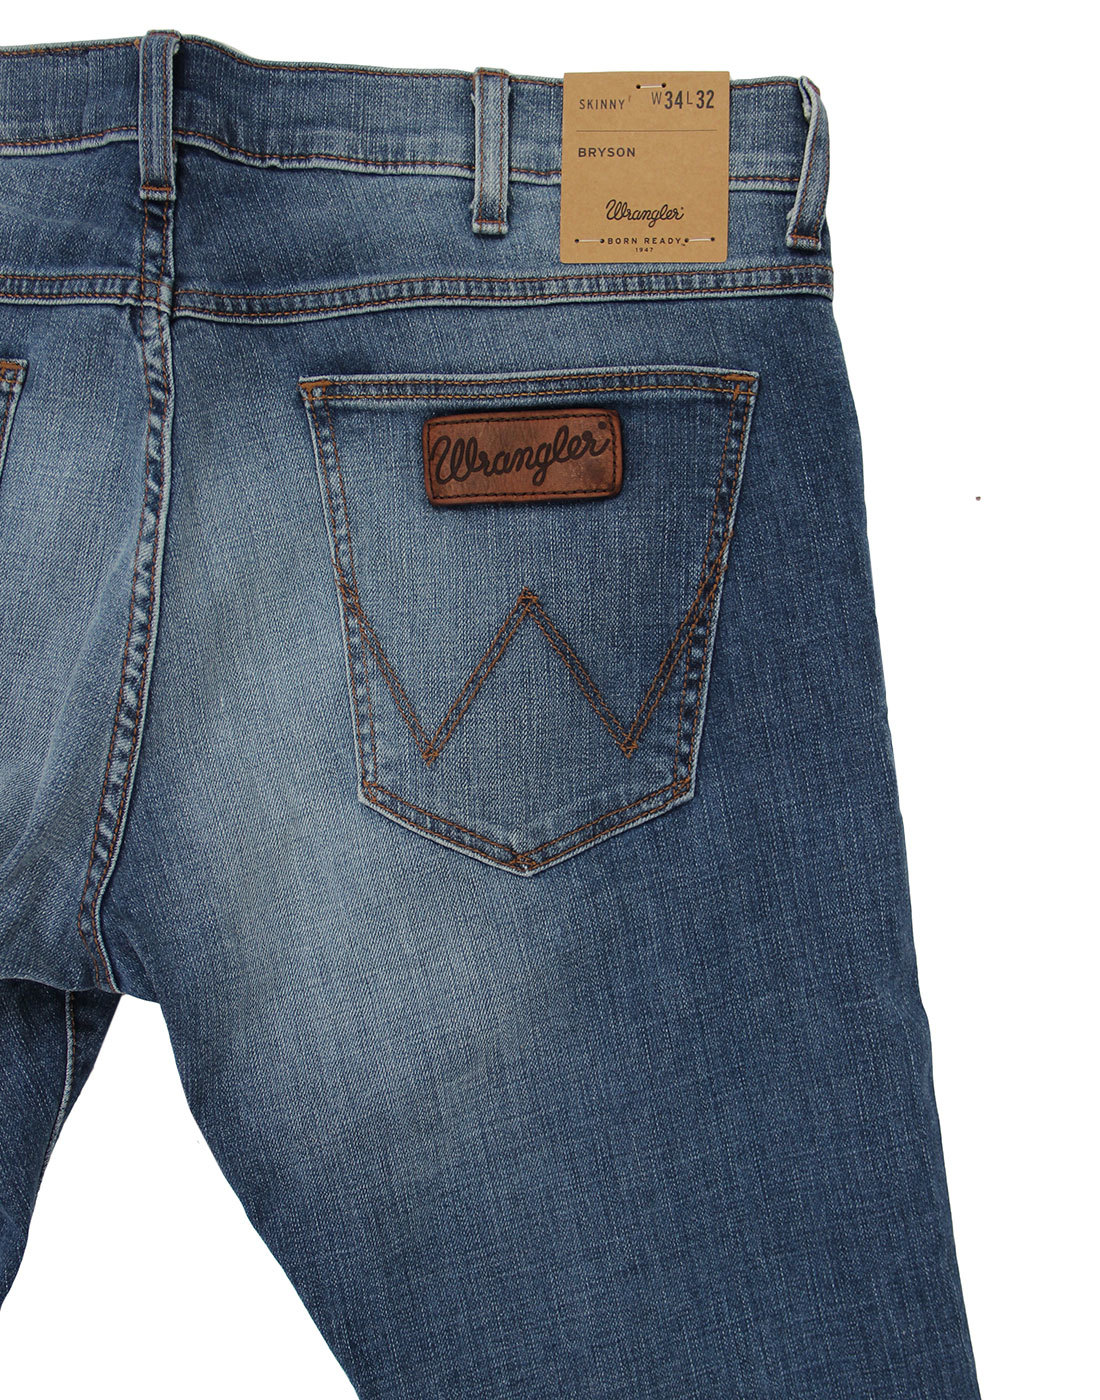 Wrangler Bryson Retro Indie Fired Up Skinny Low Waist Denim Jeans 